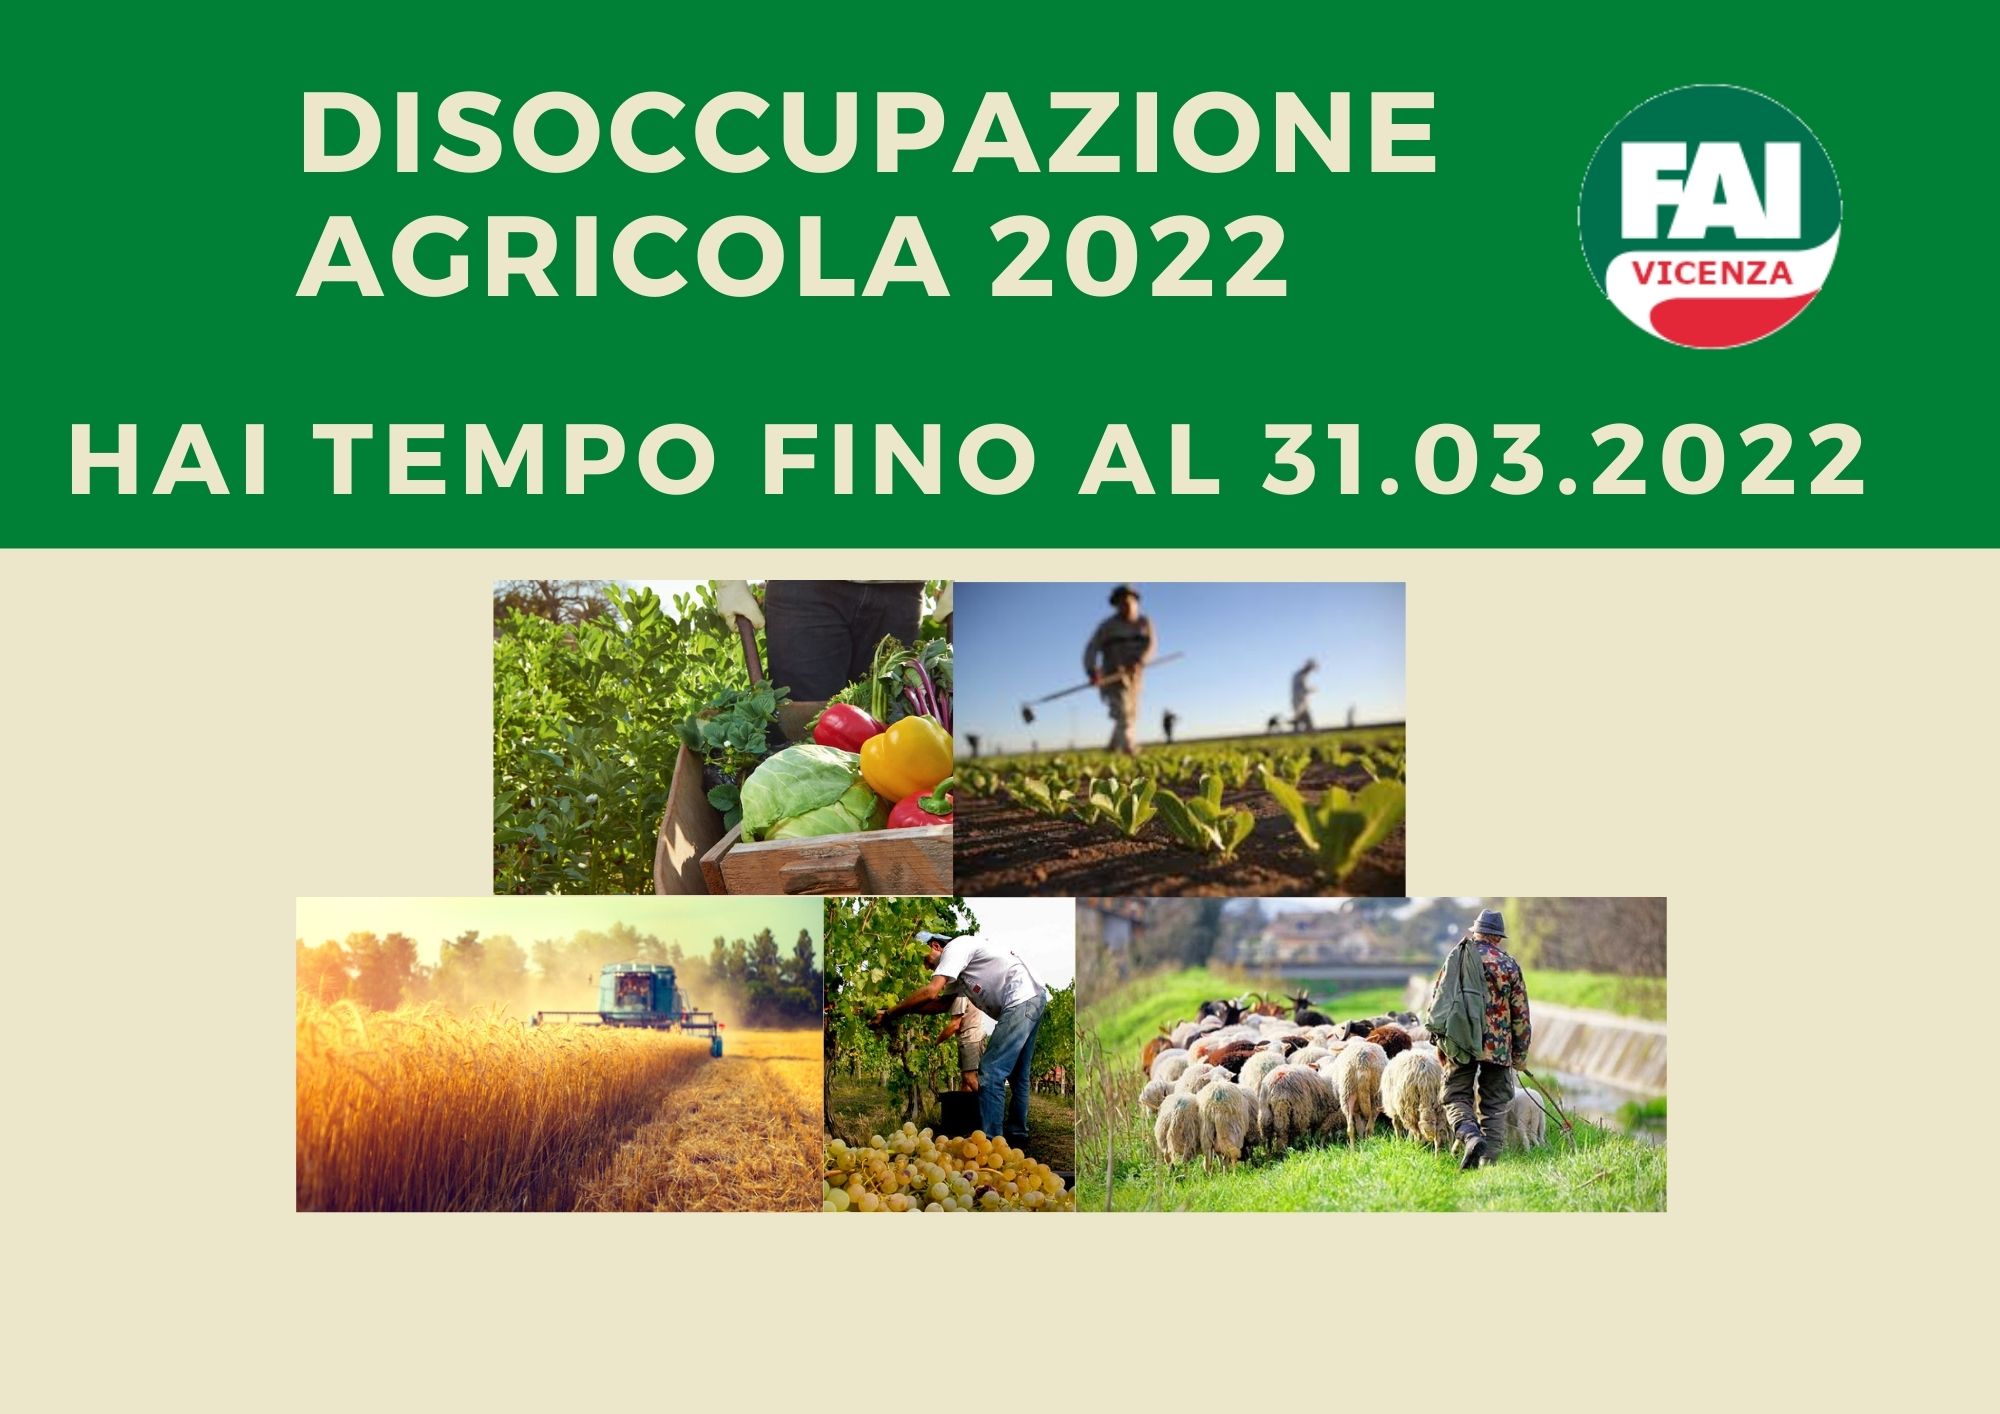 DISOCCUPAZIONE AGRICOLA 2022.